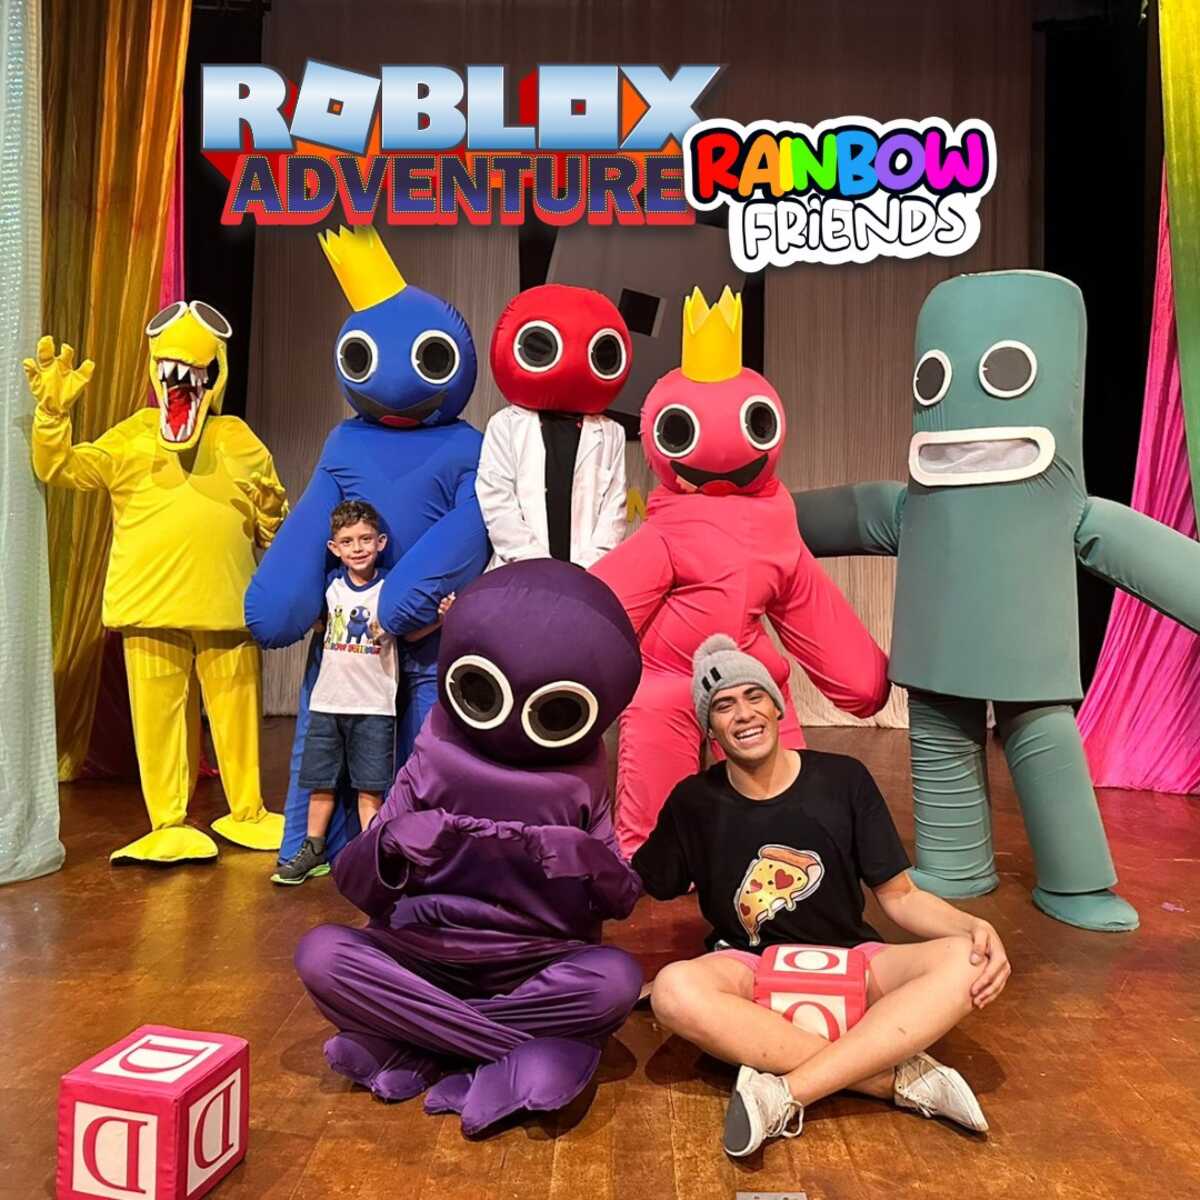 02/09 16h) Roblox Rainbow Friends Capítulo/Fase 2 - IngressoLive -  Plataforma Online de Eventos